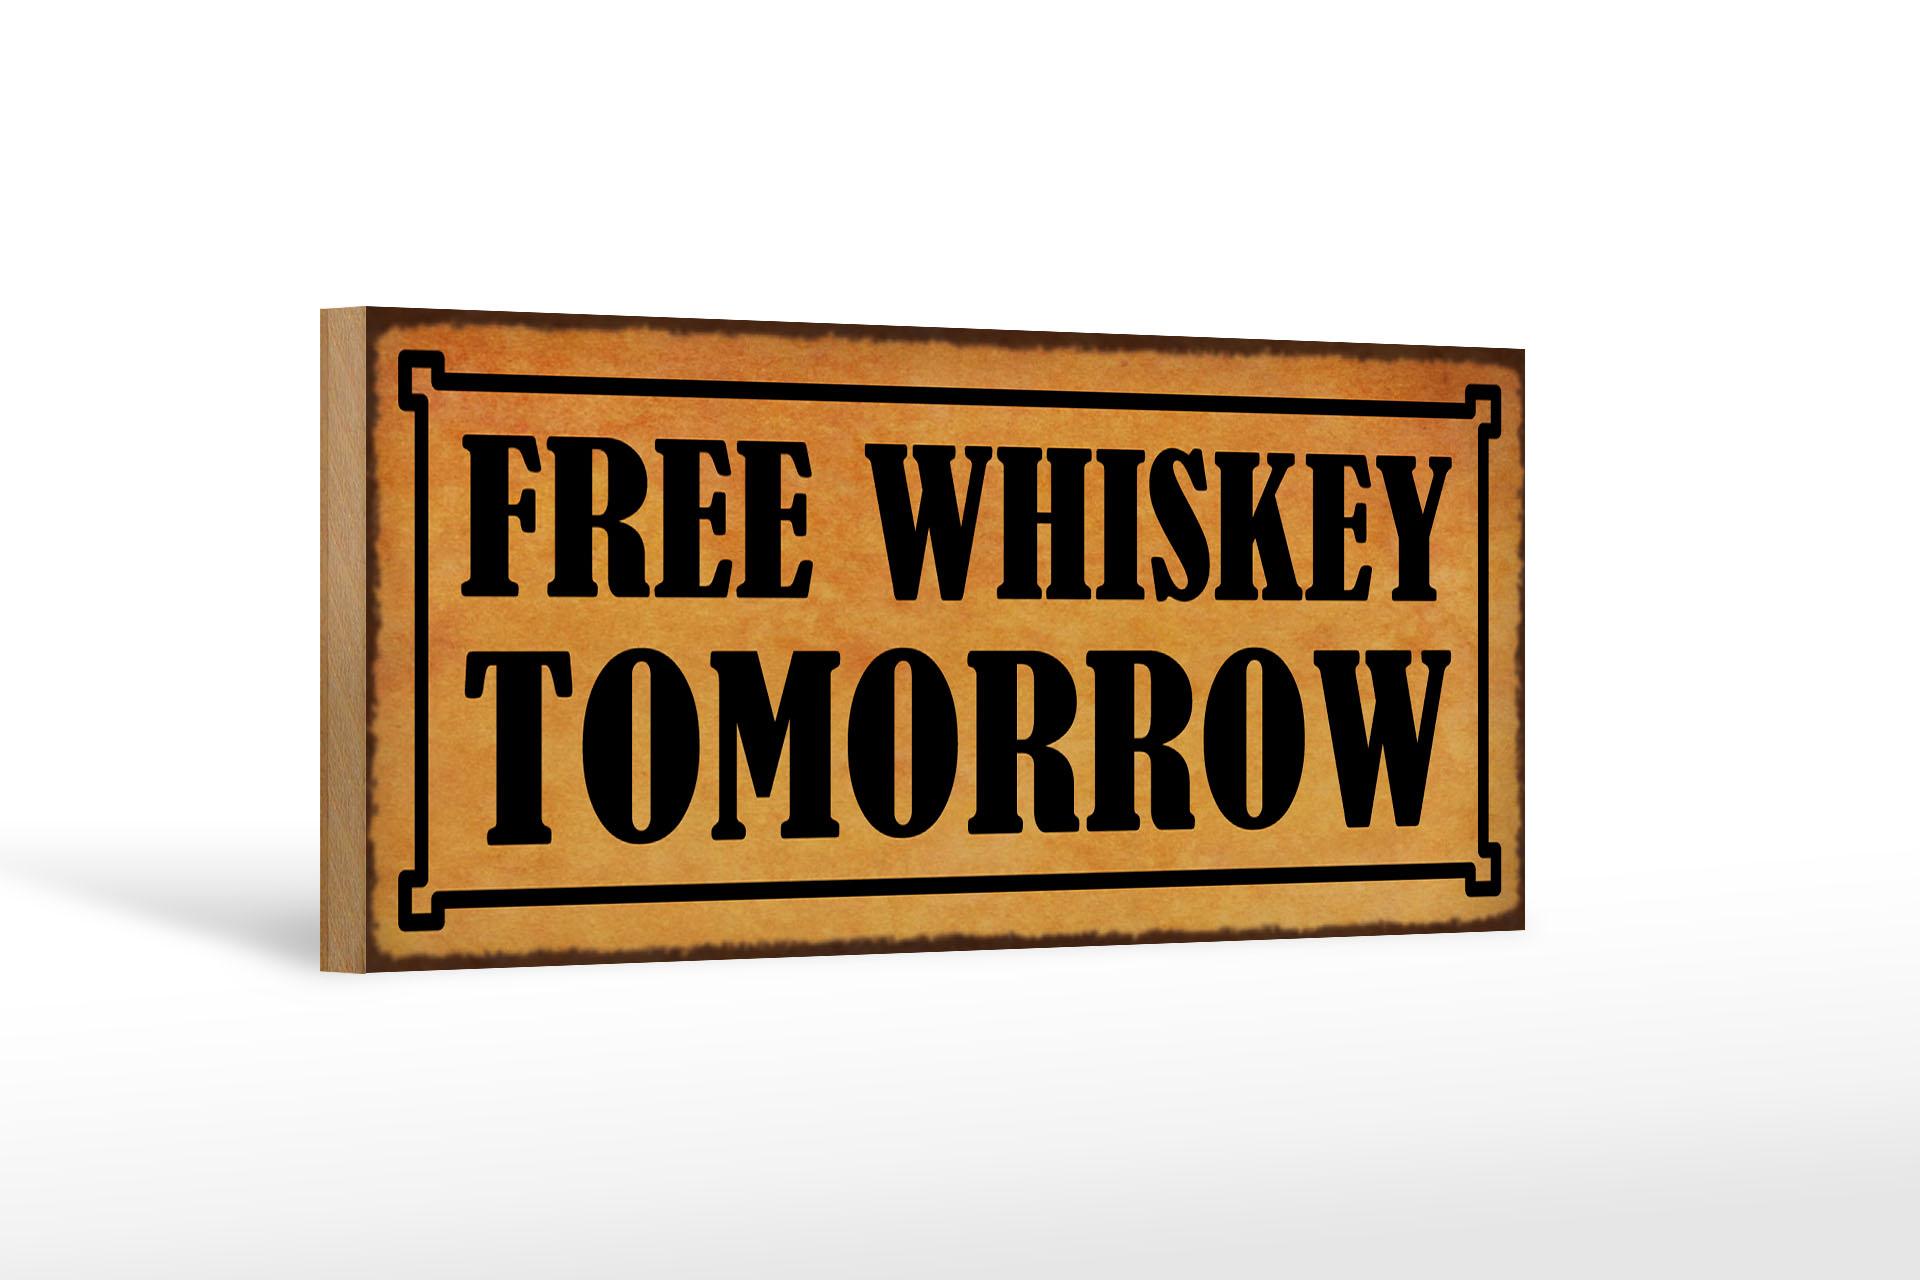 Holzschild Spruch 27x10 cm free whiskey tomorrow Holz Deko Schild wooden sign